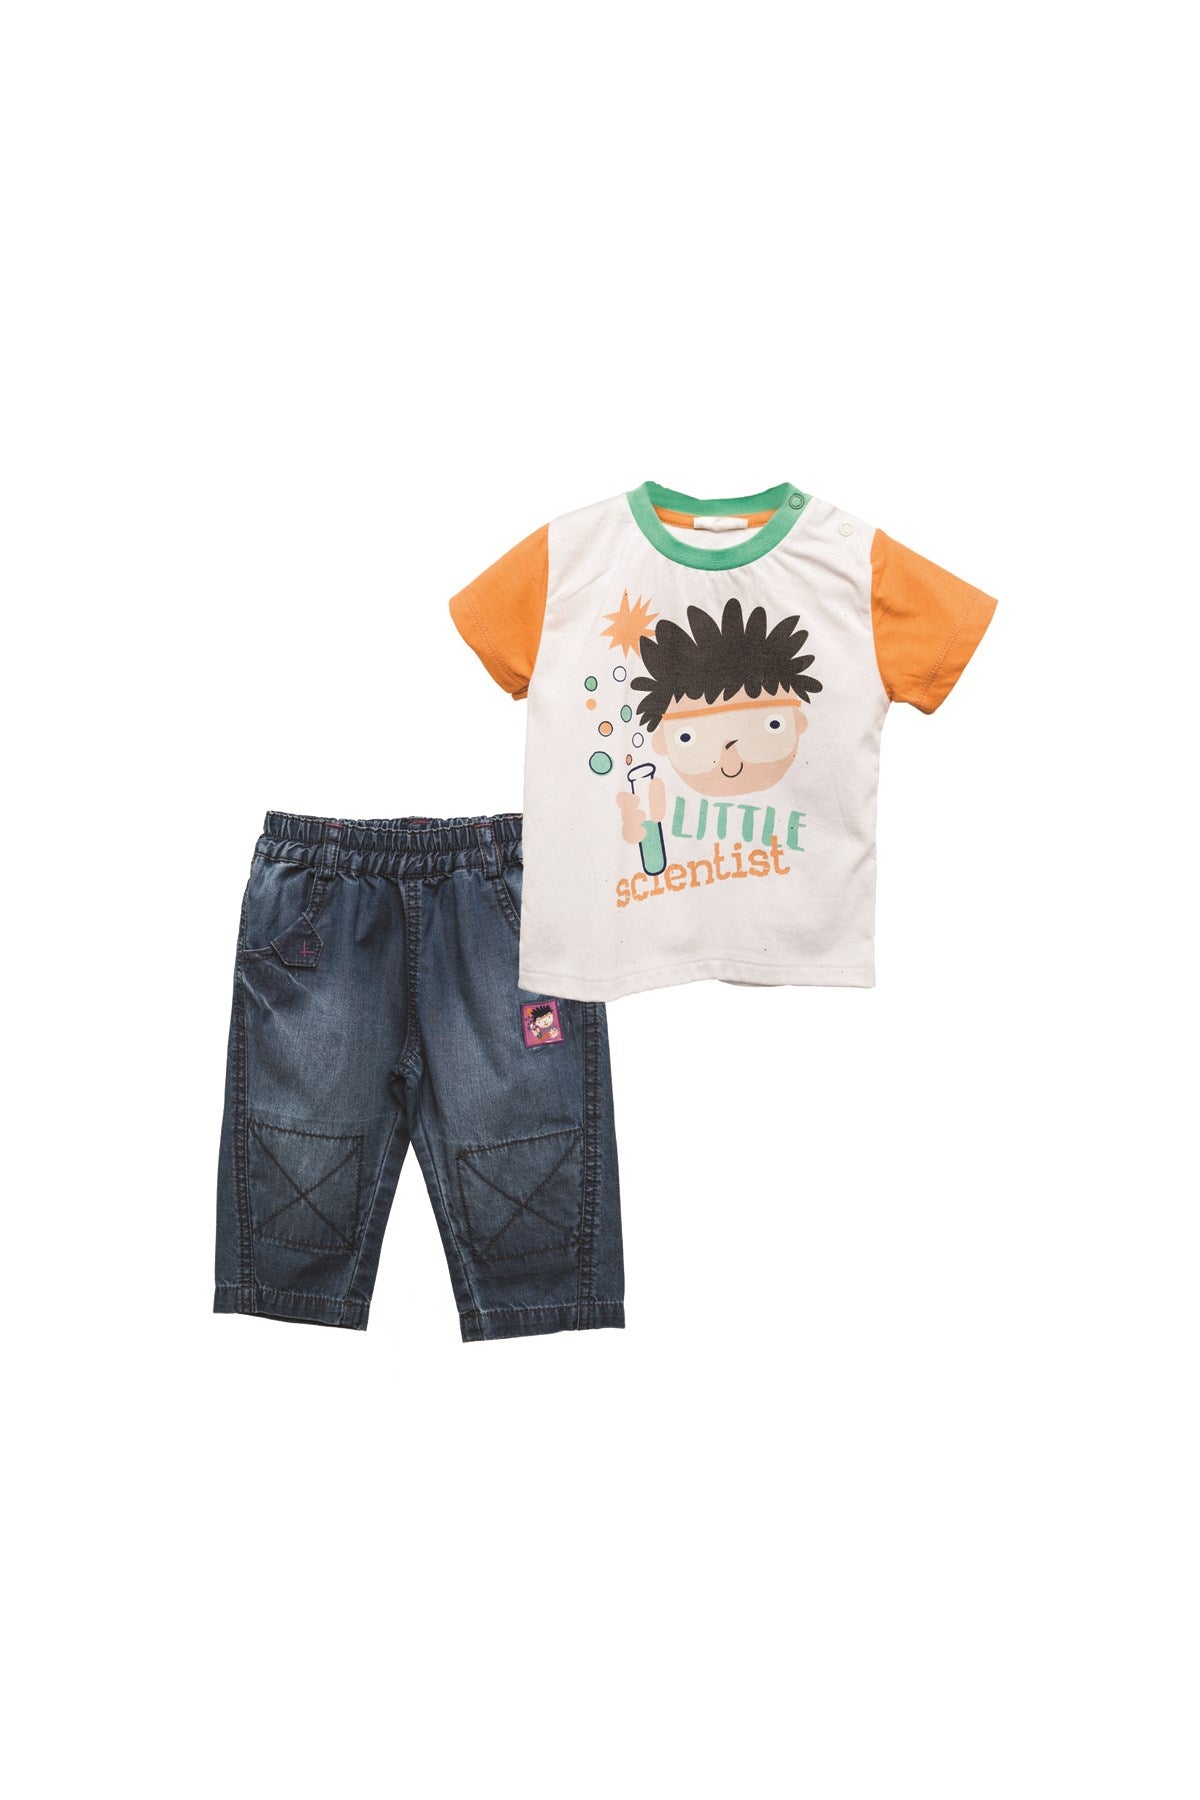 Erkek Bebek T-shirt ve Pantolon Takım (6ay-4yaş)-0